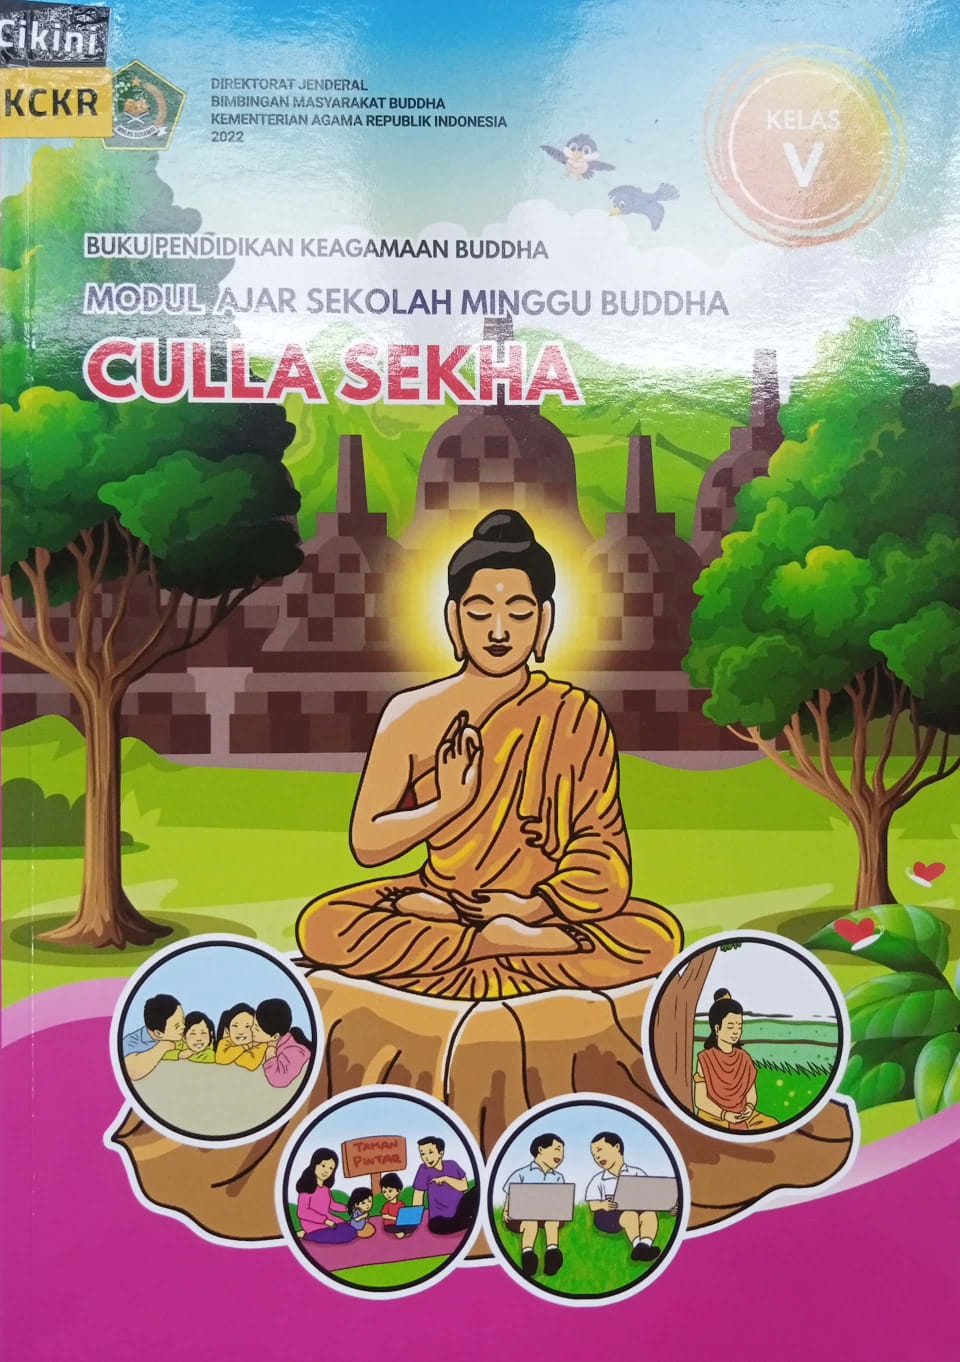 Buku pendidikan keagamaan Buddha modul ajar sekolah minggu Buddha culla sekha :  kelas V